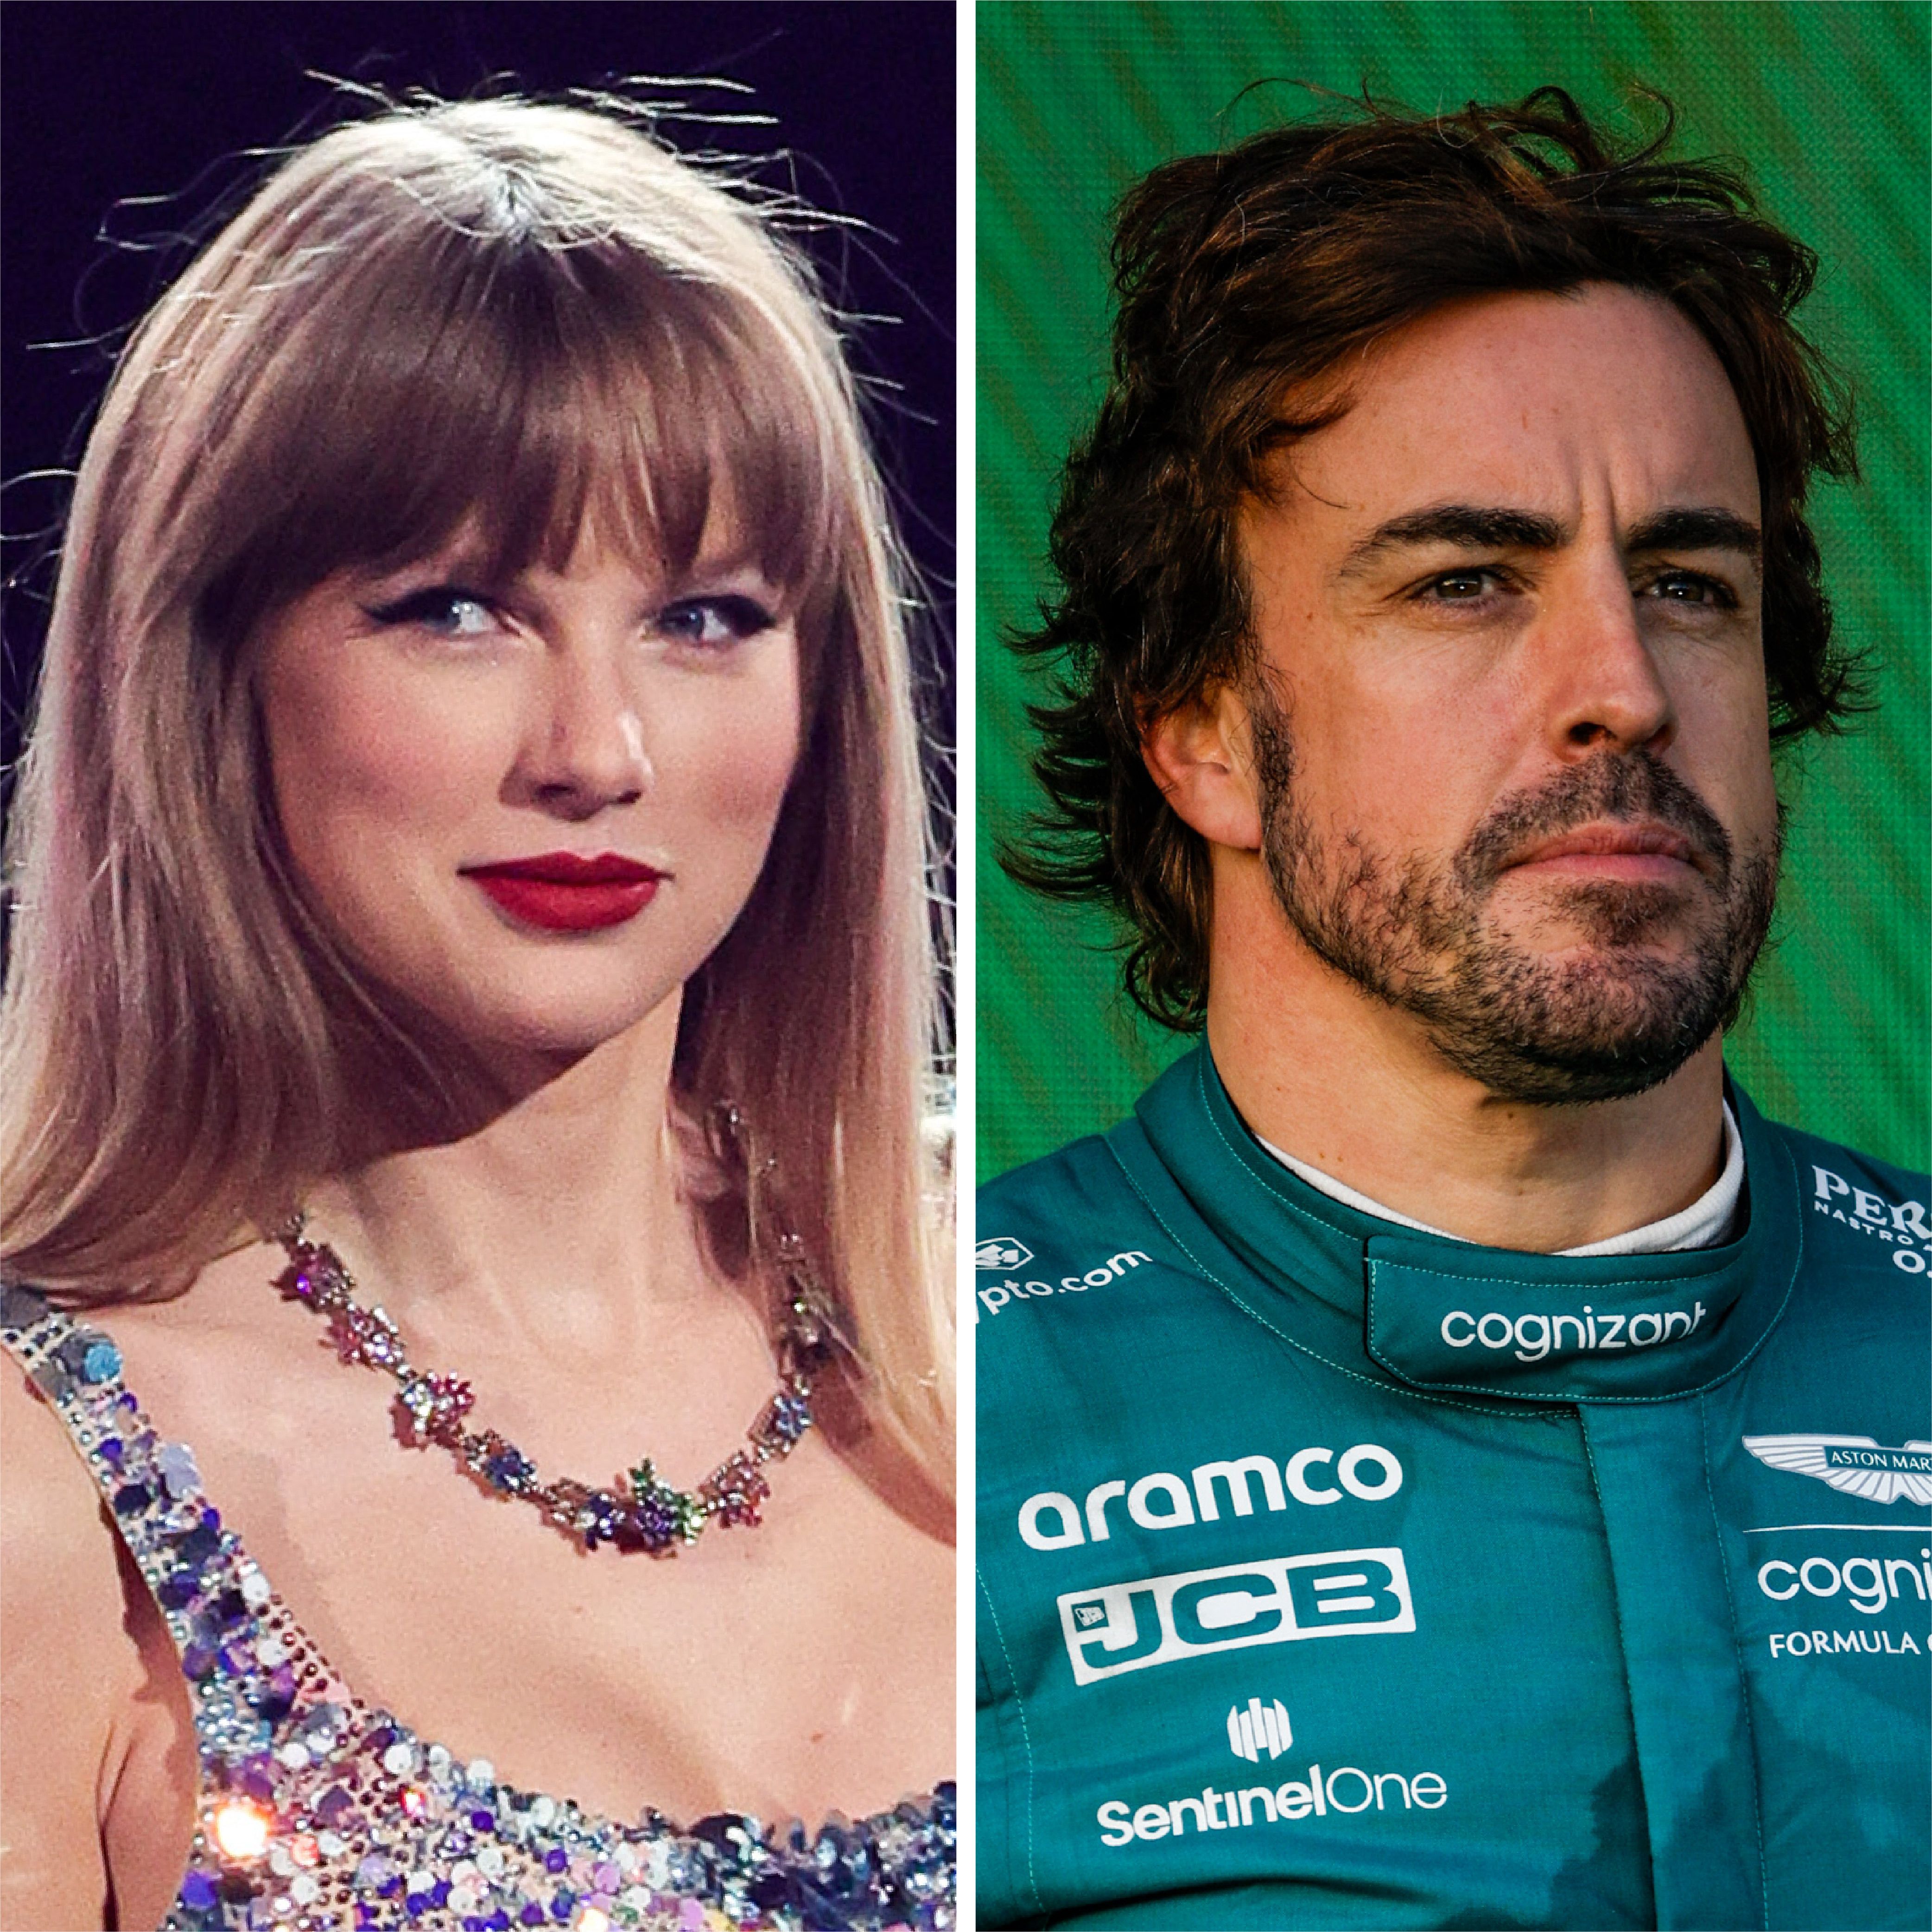 Fernando Alonso: Taylor Swift songs to describe eras of Aston